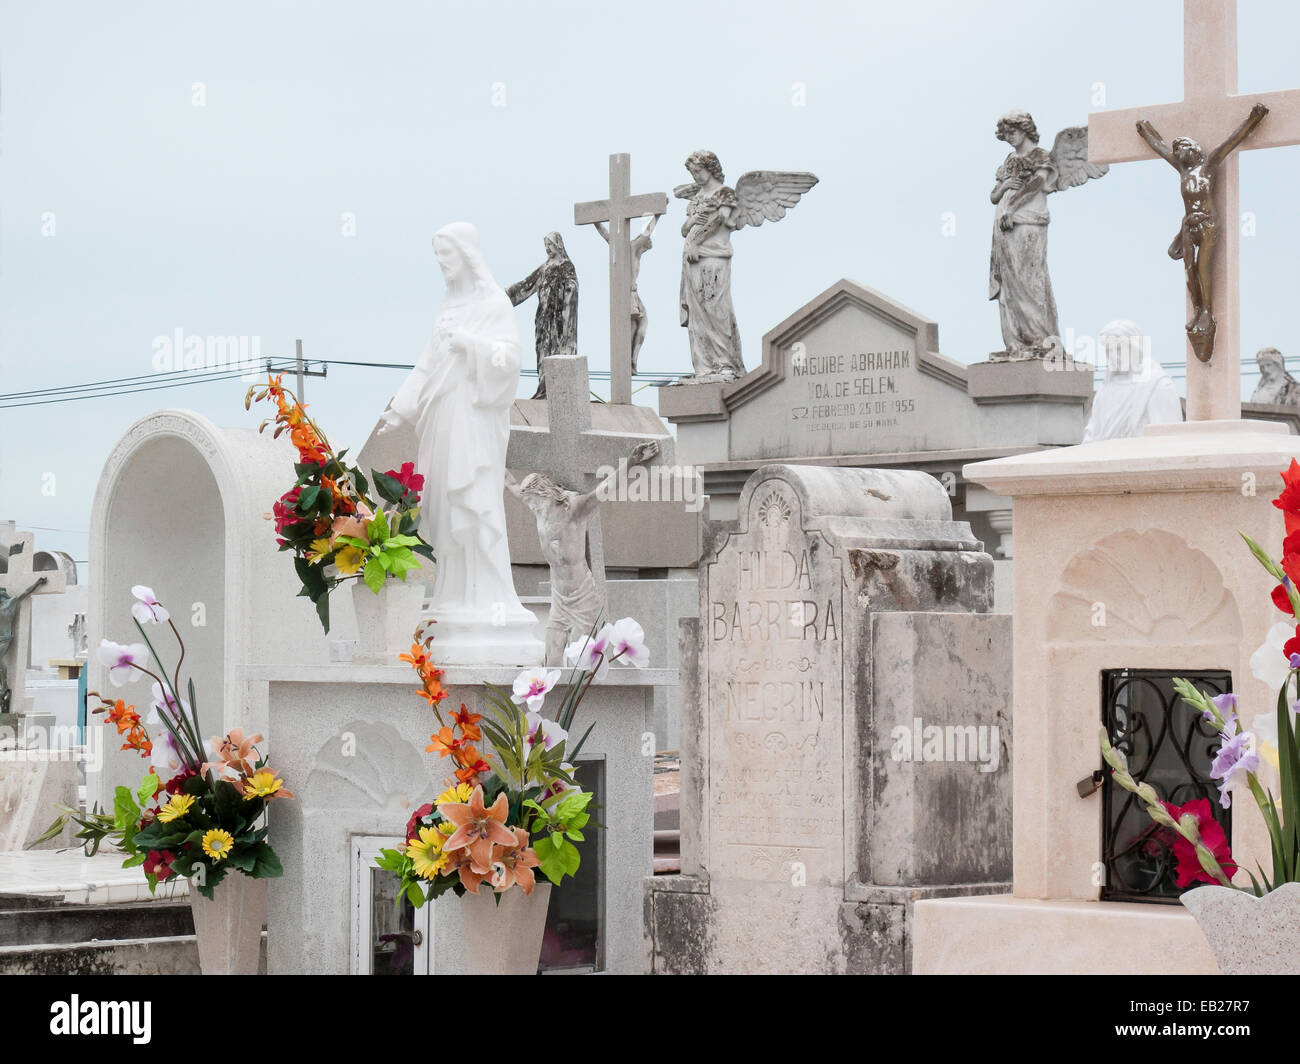 Panteon de San cimitero romano dettaglio di pietre di marmo con croci scolpite e angeli adornati con fiori freschi colorati, Campeche, Messico. Foto Stock